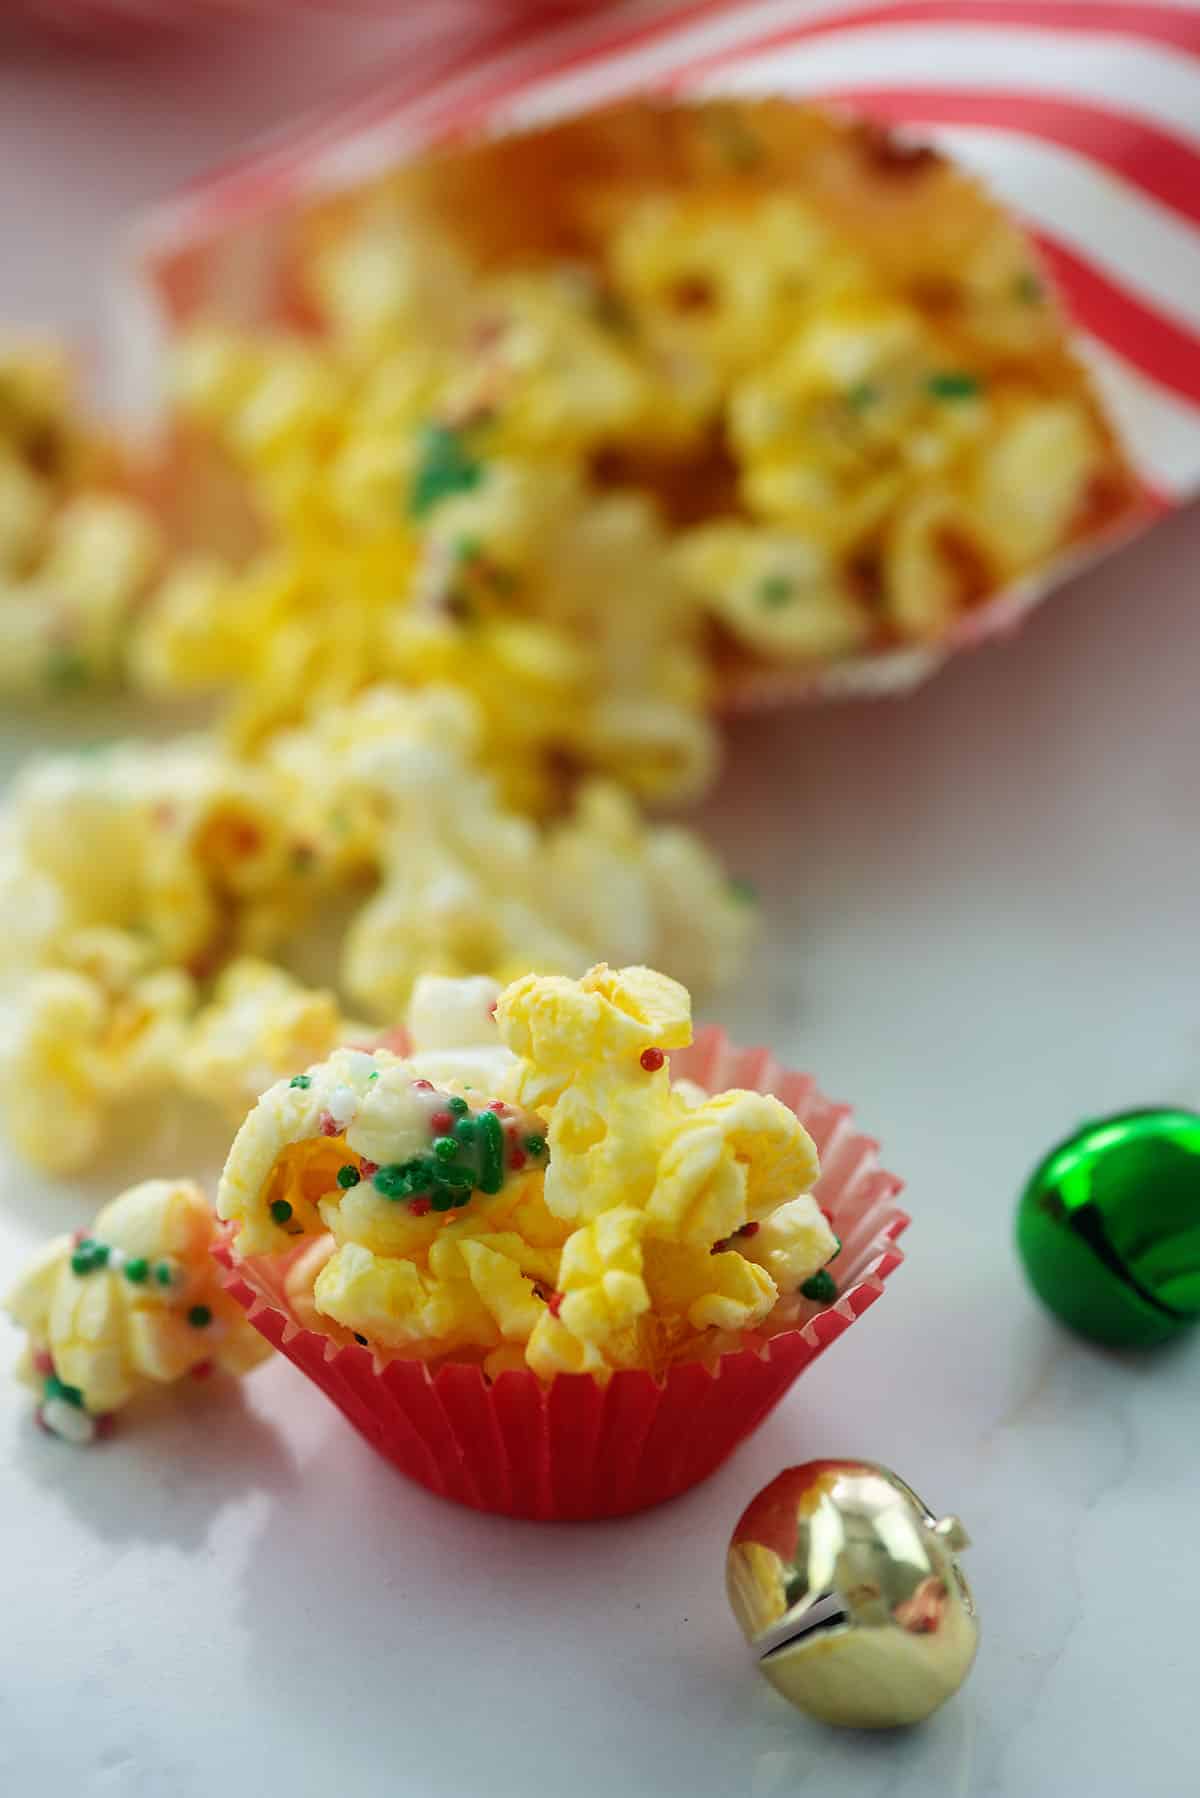 mini cups full of popcorn covered in sprinkles.